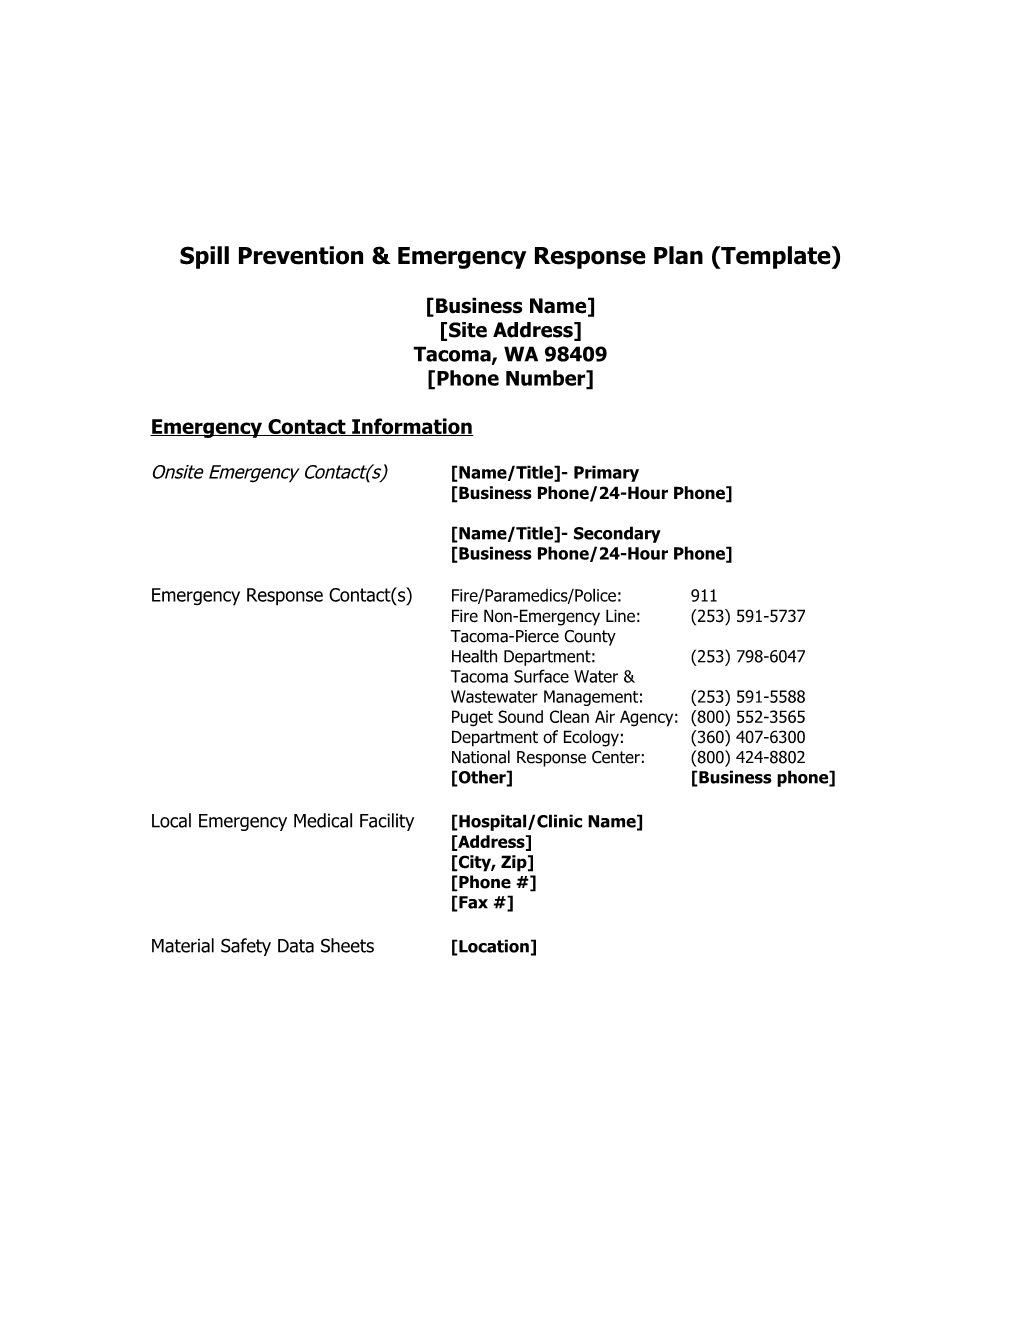 Spill Prevention & Emergency Response Plan